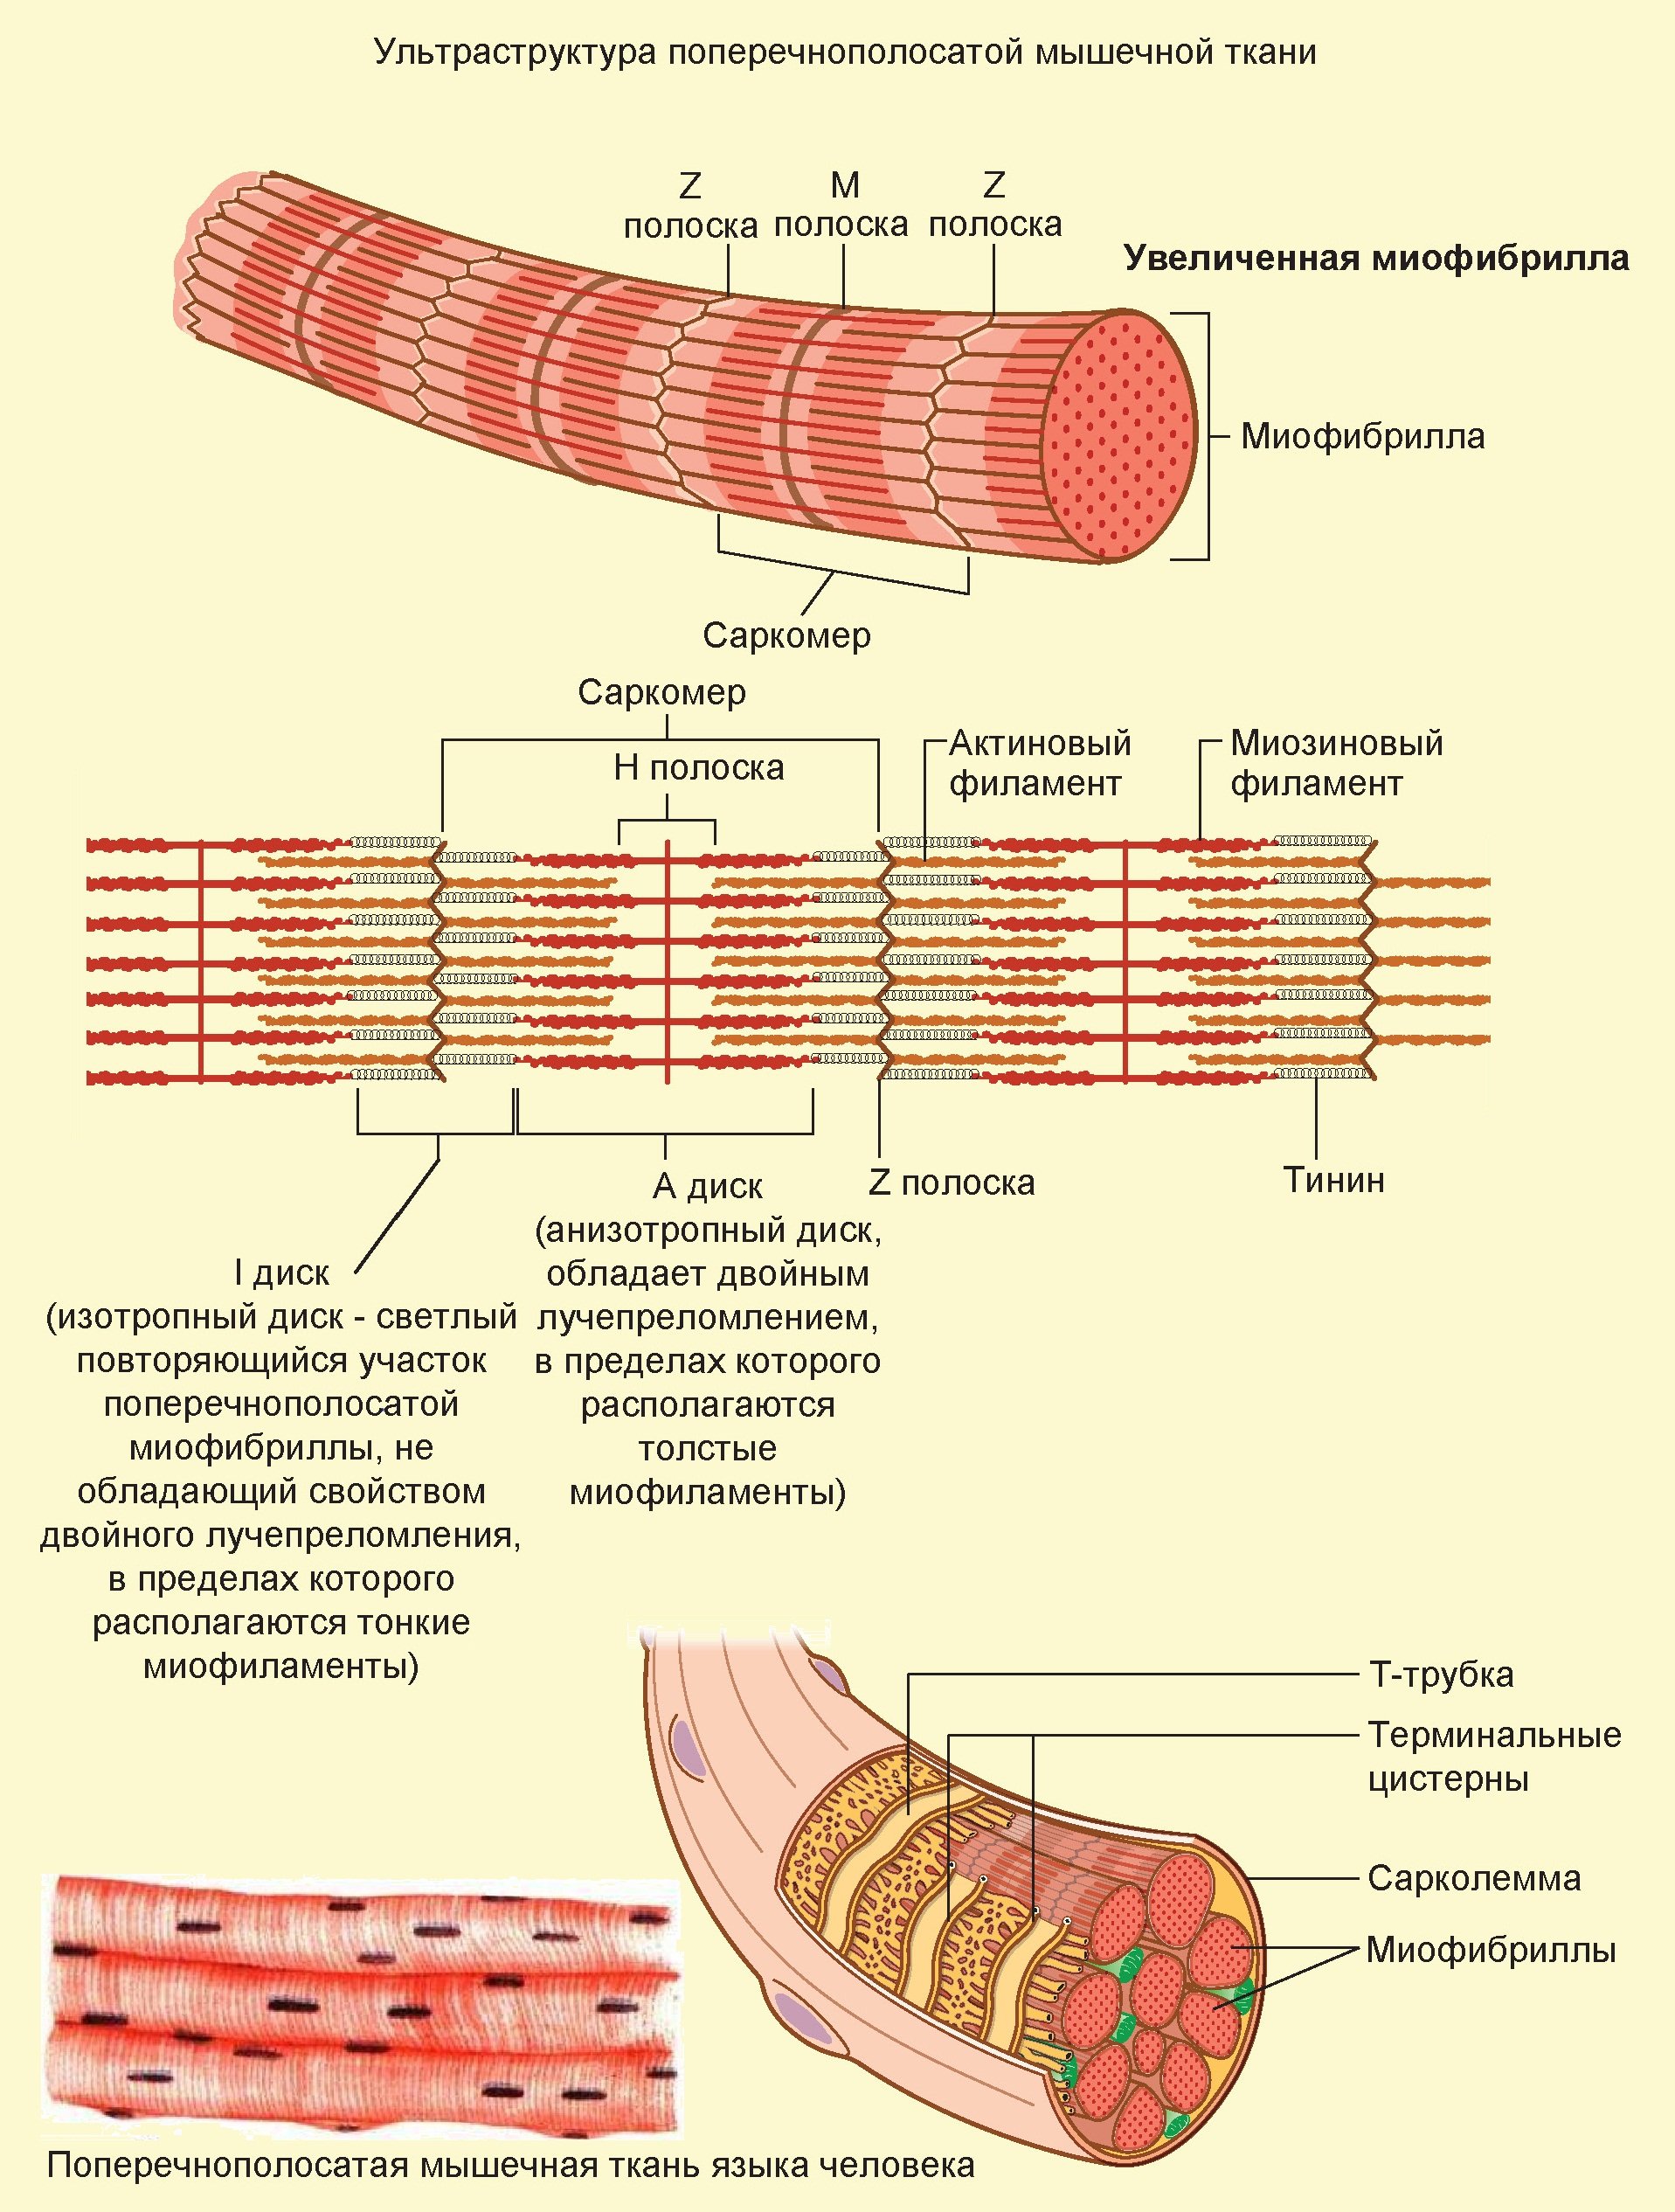 Каким номером на рисунке обозначена миофибрилла. Скелетная мышечная ткань саркомер. Структура поперечно полосатого мышечного волокна. Ультраструктура скелетного мышечного волокна. Схема поперечно полосатого мышечного волокна.